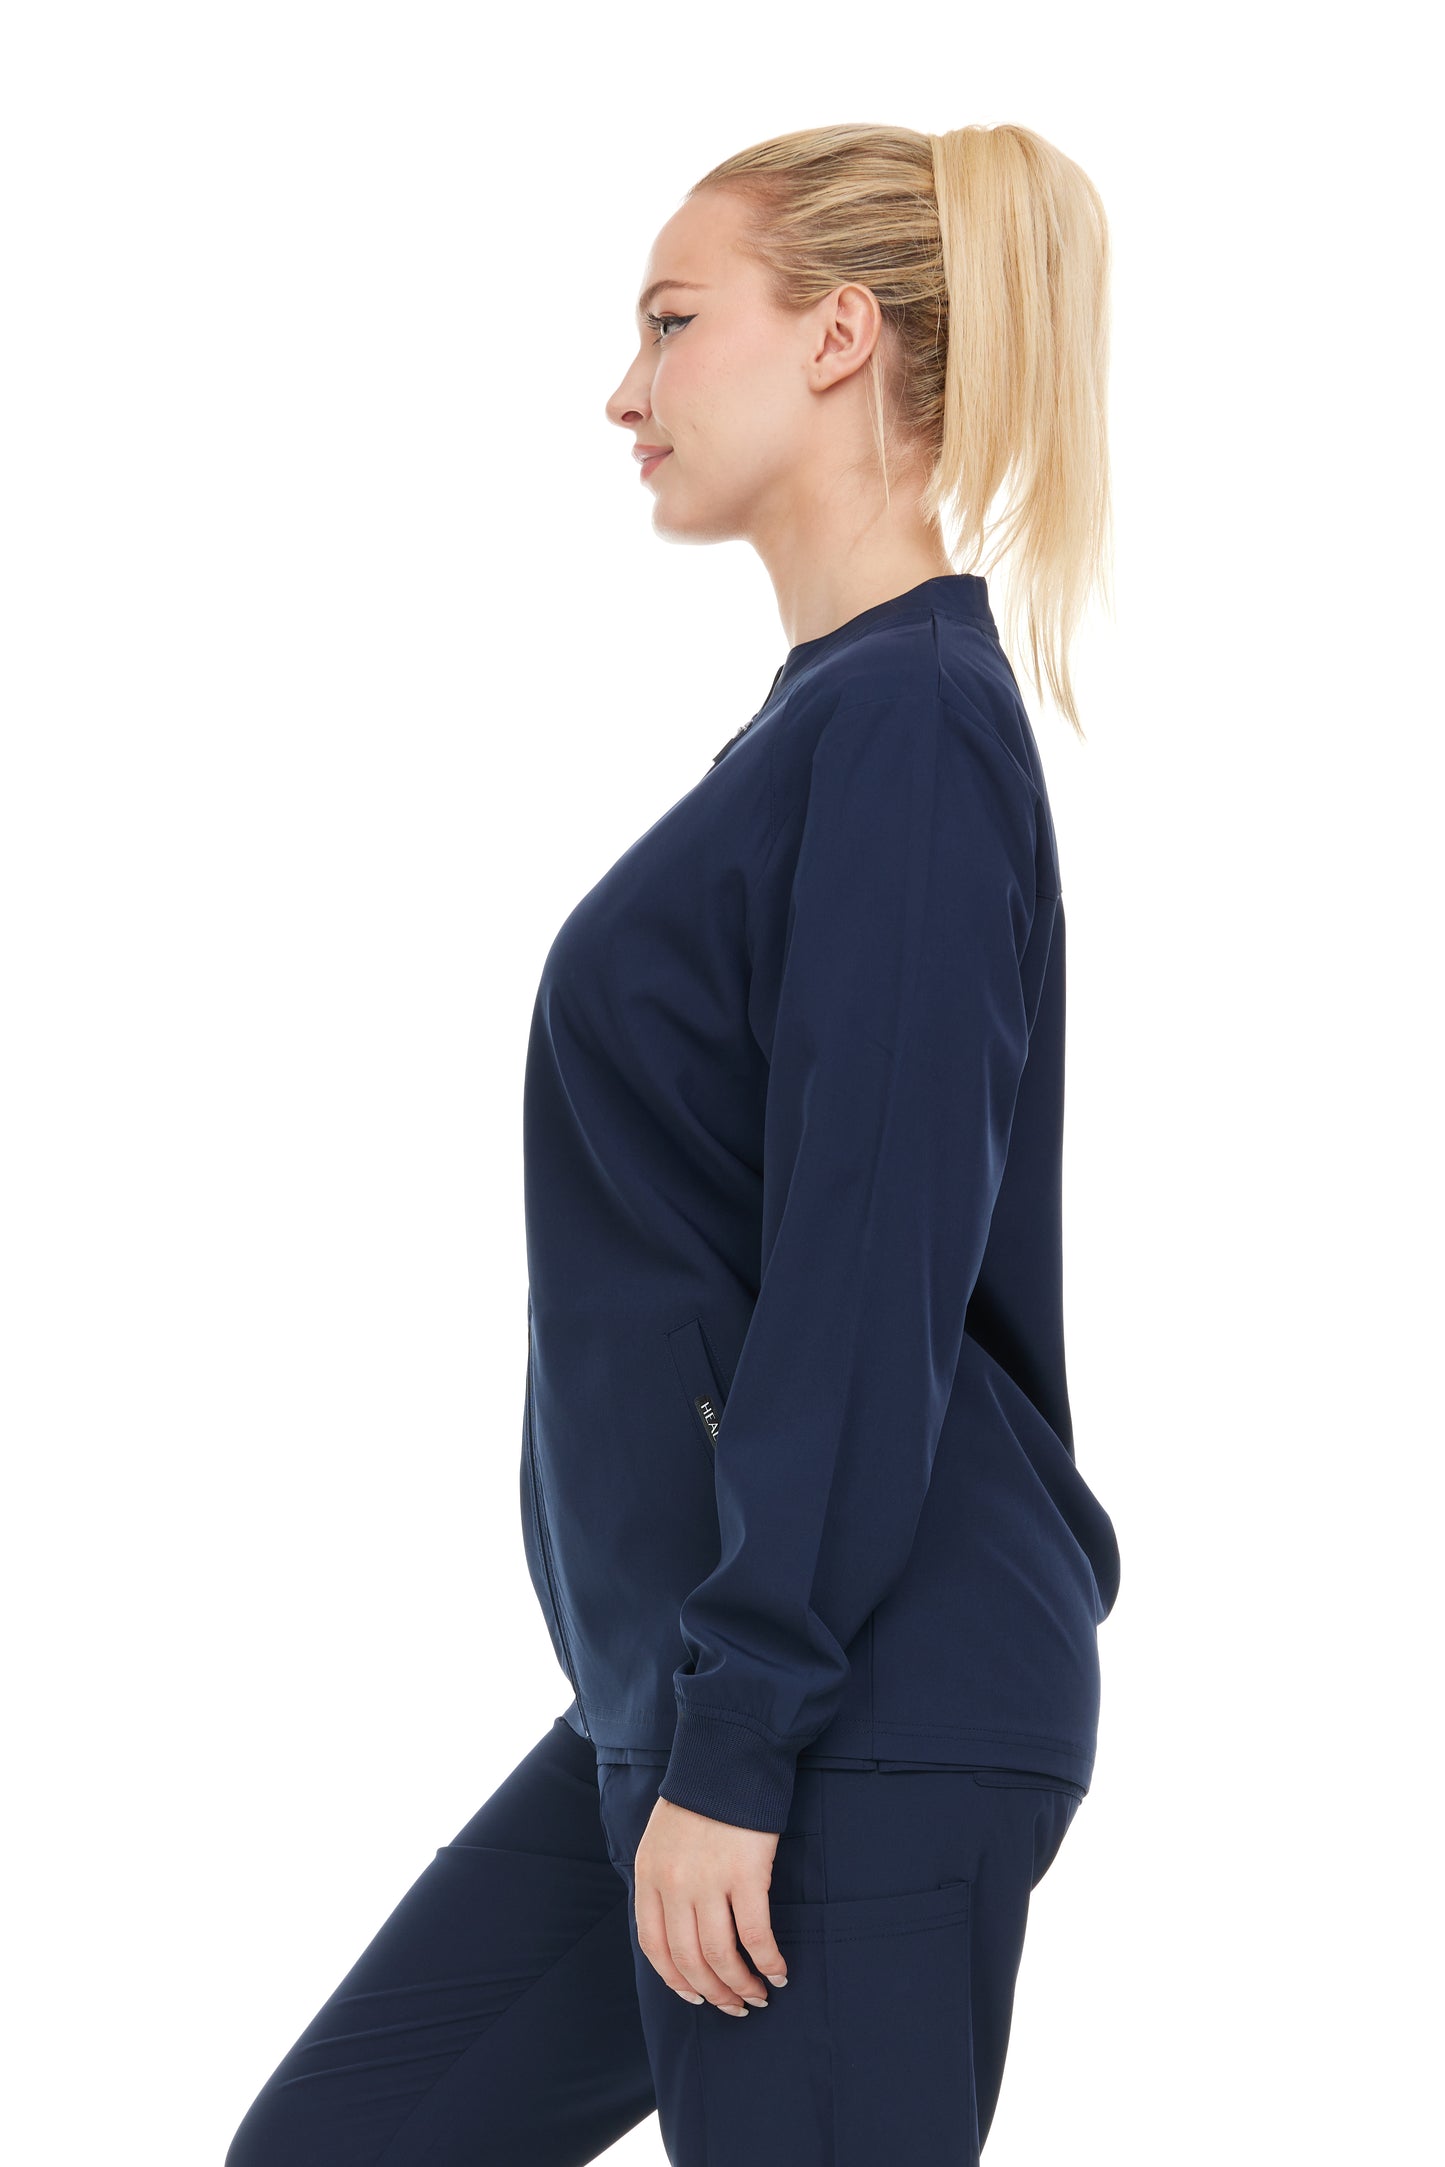 Heal+Wear Modern Women Warm Up Scrub Jacket Zip Front - DDJ010